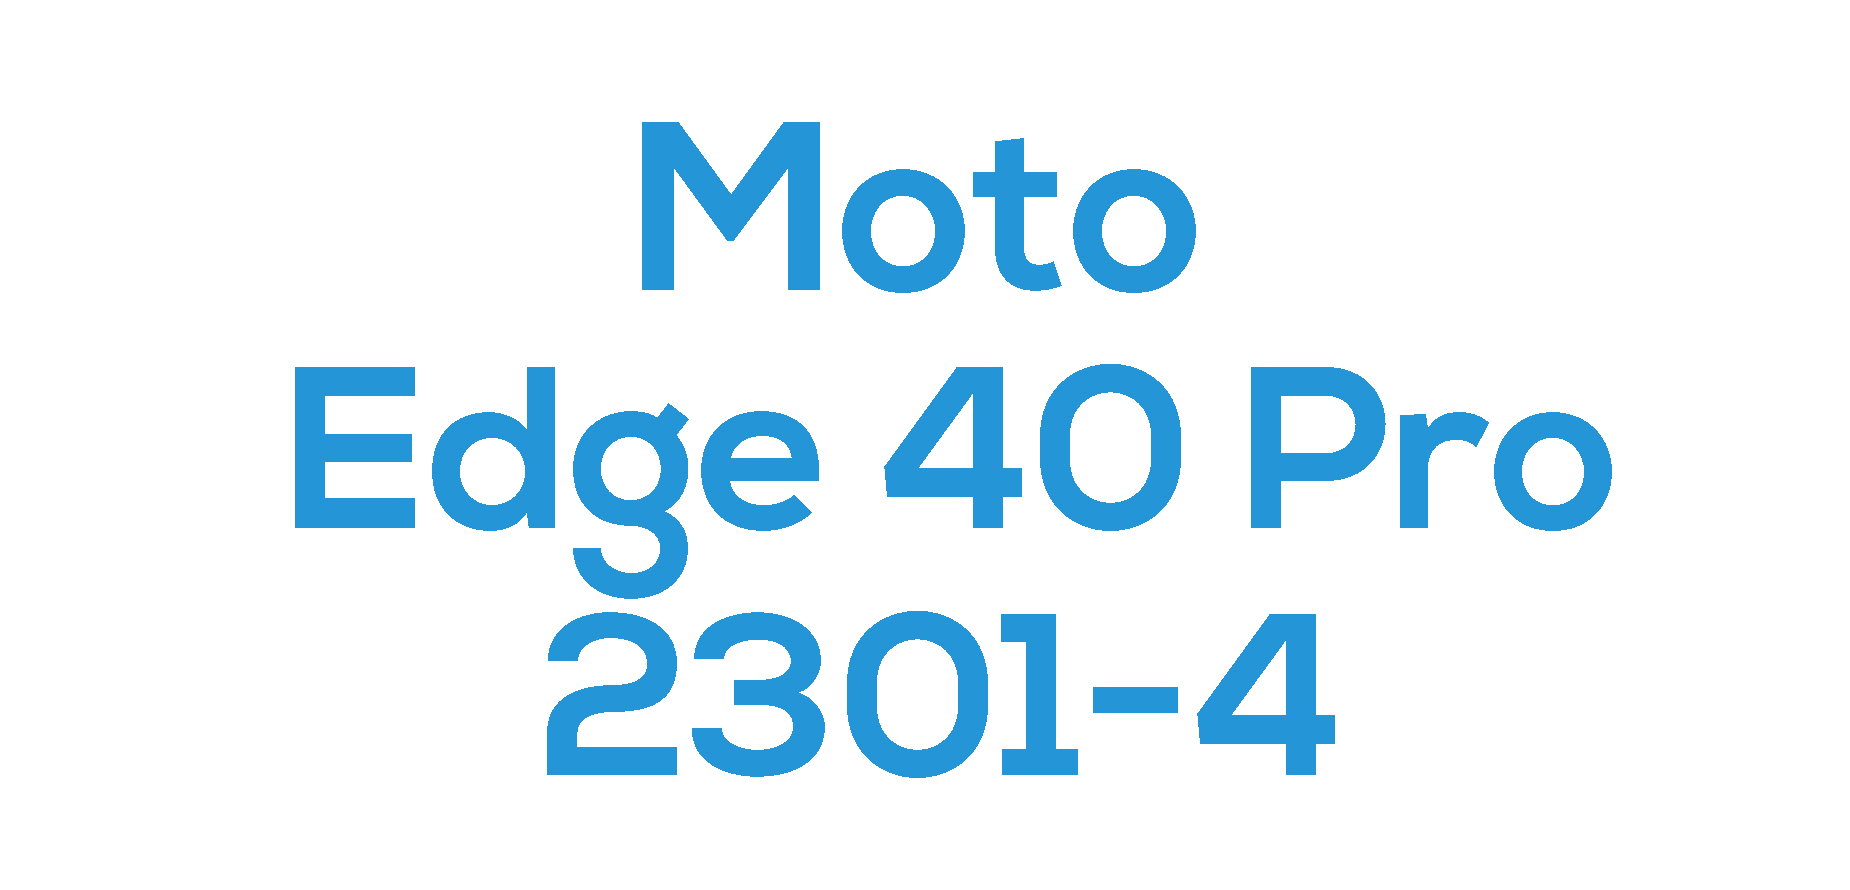 Edge 40 Pro (XT2301-4)